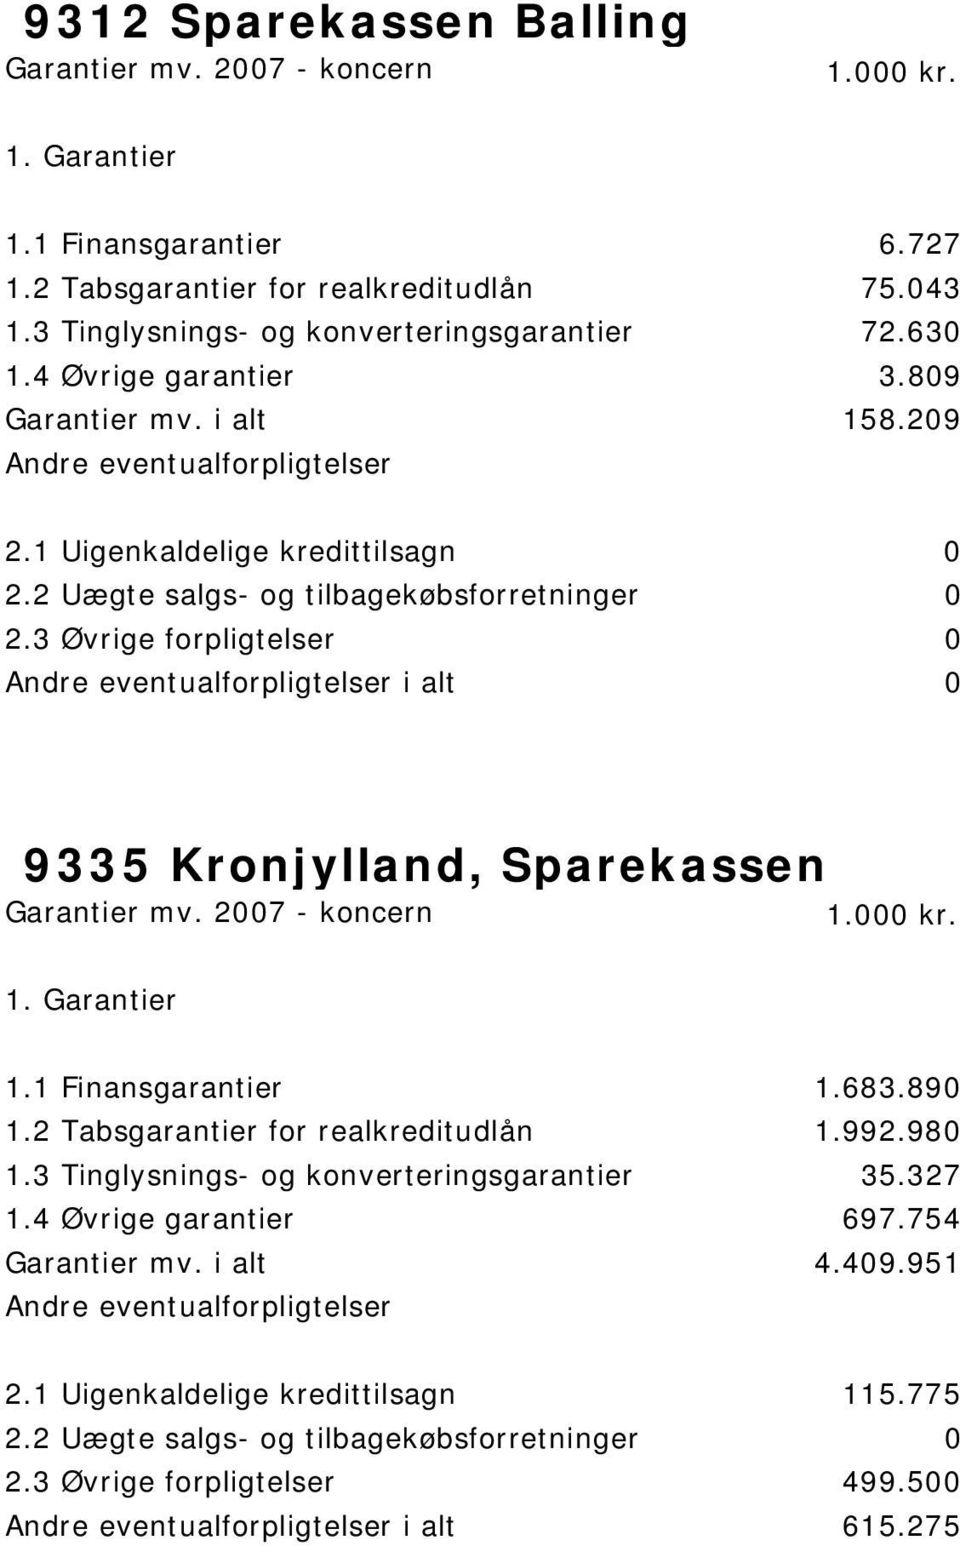 209 i alt 0 9335 Kronjylland, Sparekassen 1.1 Finansgarantier 1.683.890 1.2 Tabsgarantier for realkreditudlån 1.992.980 1.